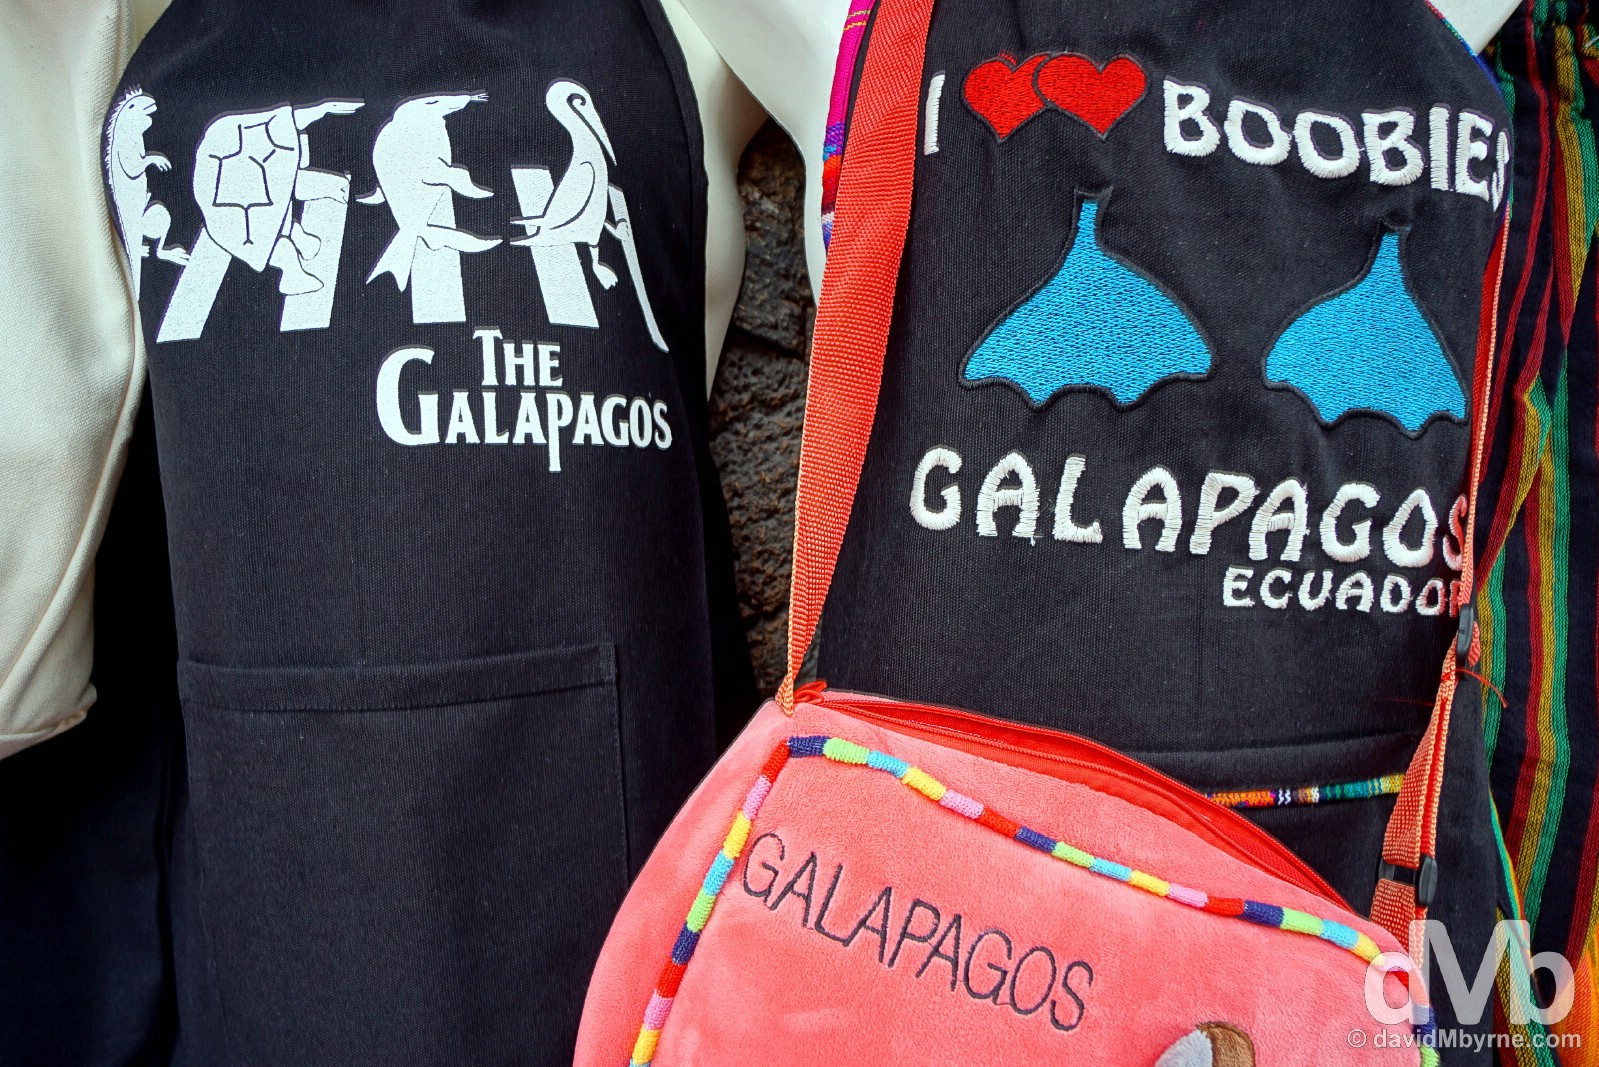 For sale in Puerto Ayora on Isla Santa Cruz, Galapagos, Ecuador. July 16, 2015.